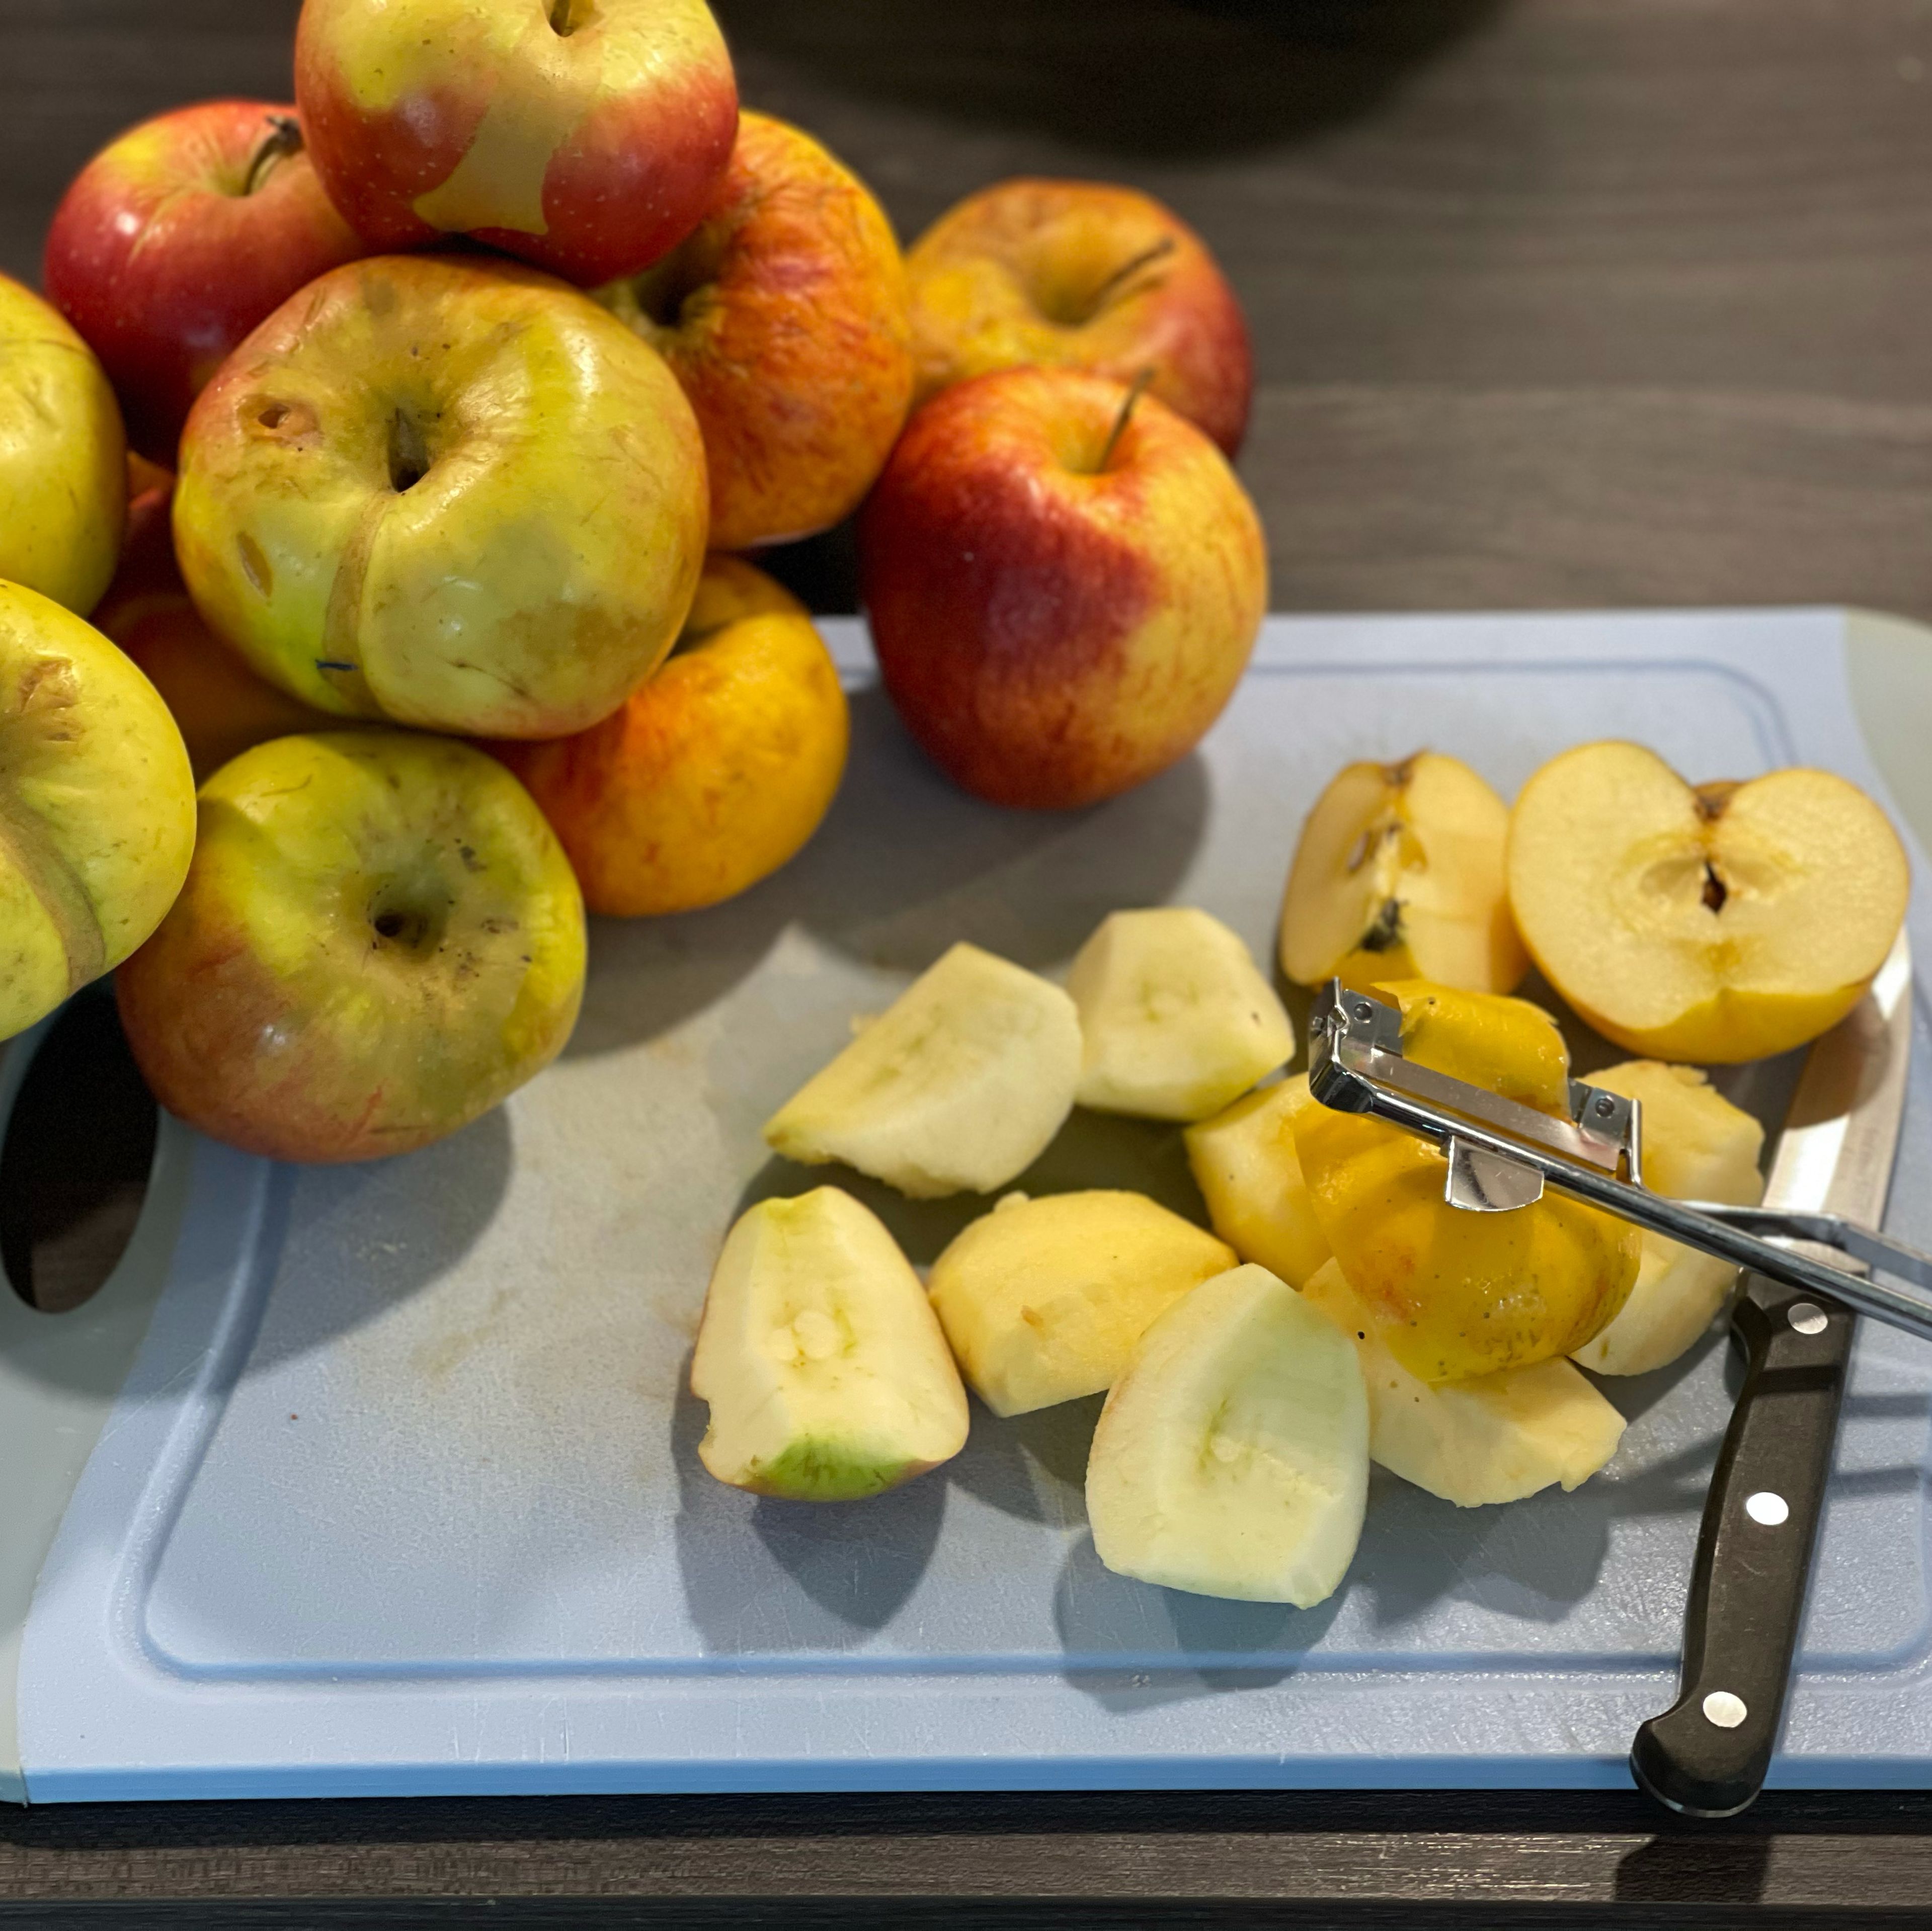 Äpfel entkernen, schälen und vierteln und in einer separaten Schüssel auf dem Cookit abwiegen. Die 1,5 kg sind das Nettogewicht.